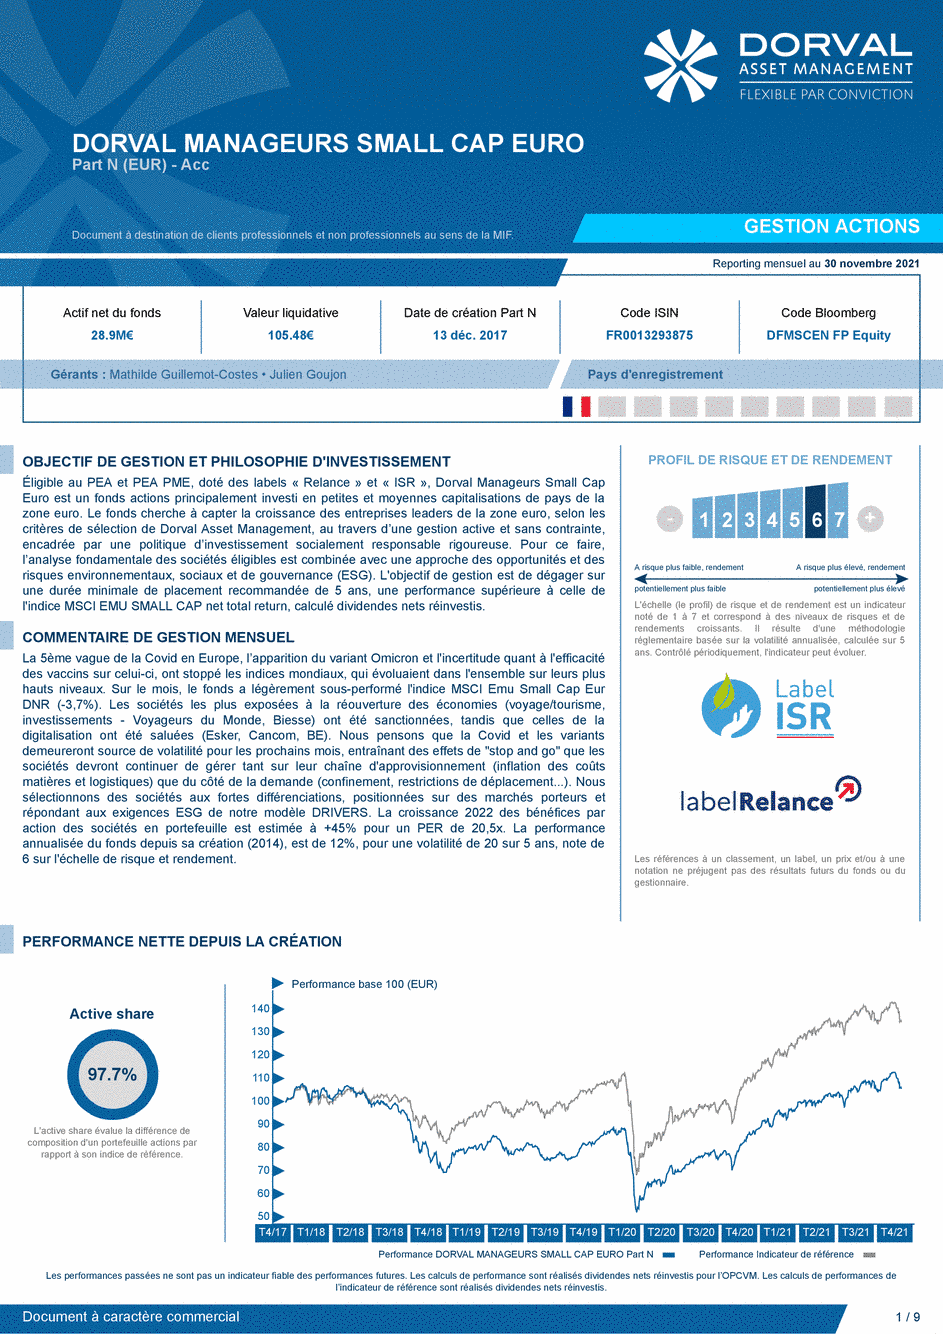 Reporting DORVAL MANAGEURS SMALL CAP EURO N - 30/11/2021 - Français